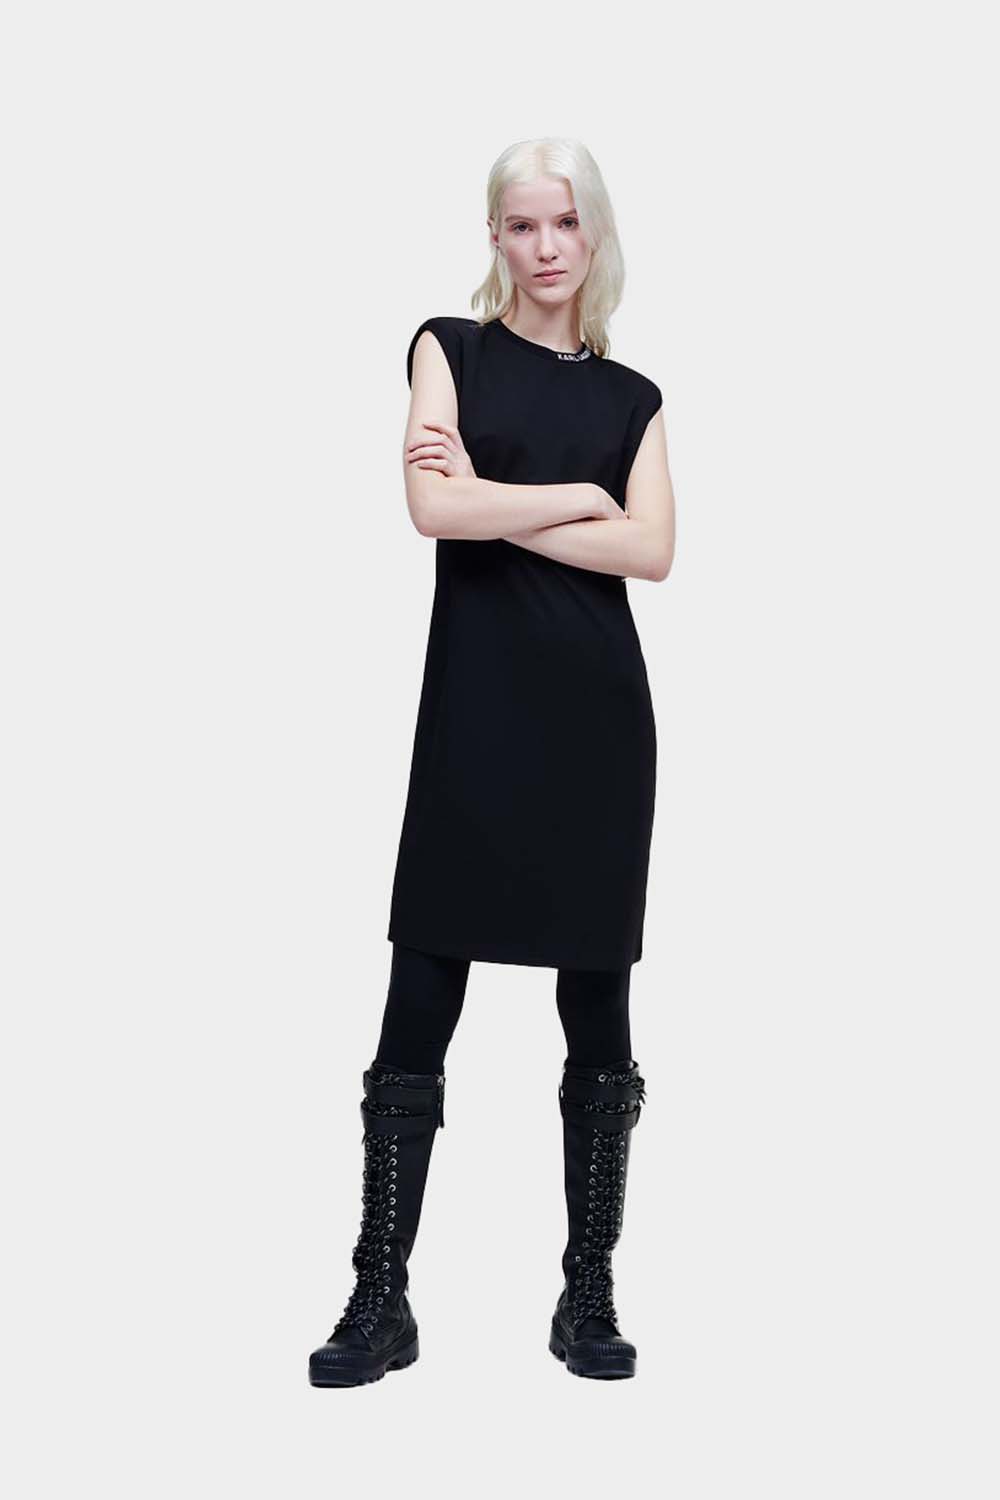 שמלת ג'רזי לנשים כריות כתפיים KARL LAGERFELD Vendome online | ונדום .